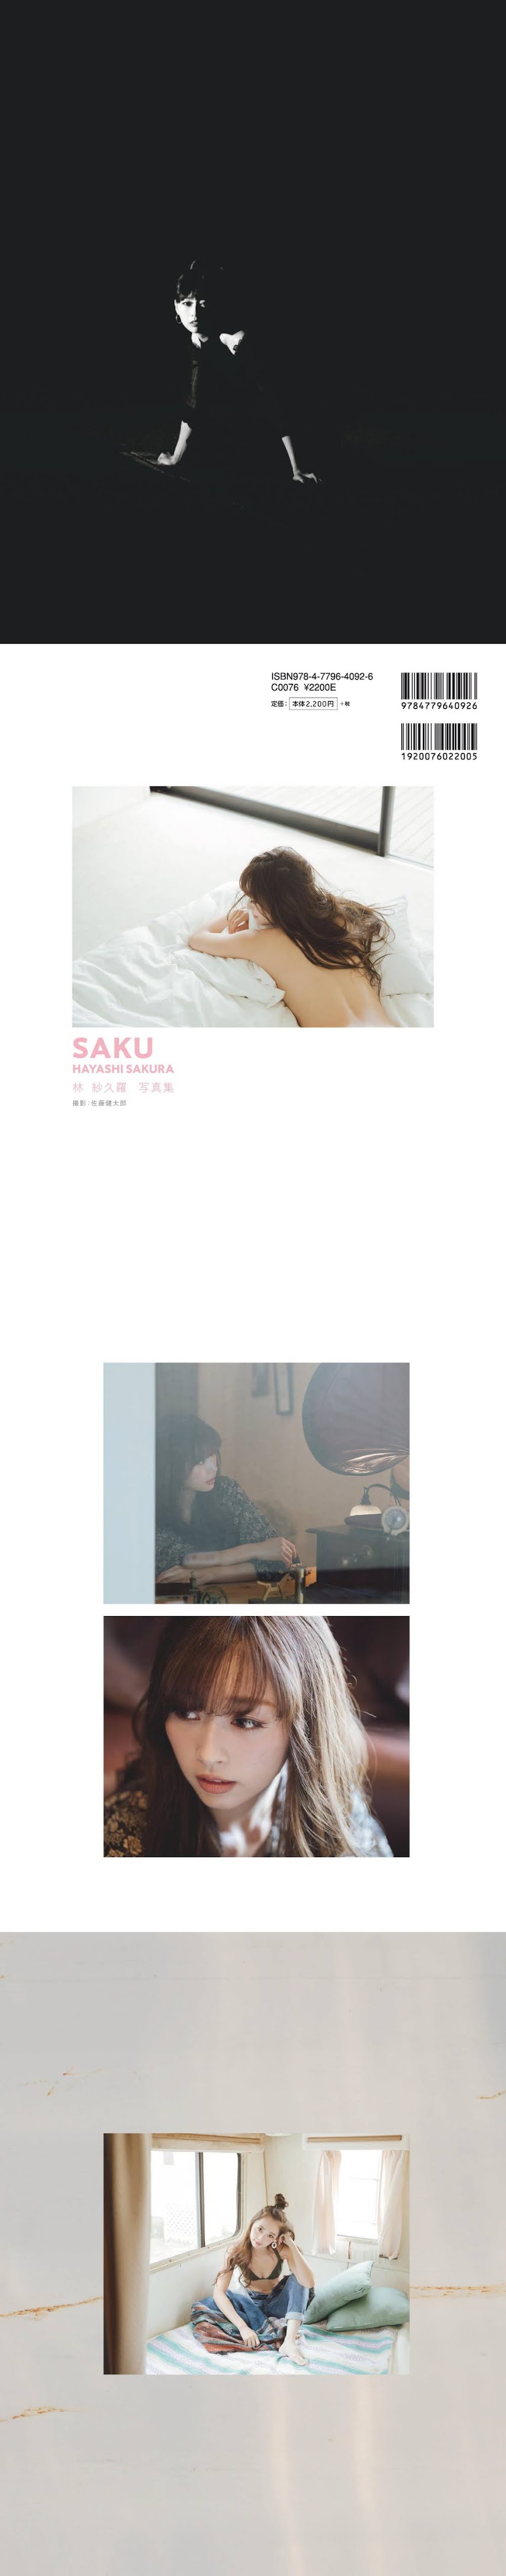 [Digital Photobook] Sakura Hayashi 林紗久羅 - SAKU (2019-12-26)   P214542 digital-photobook 12190 